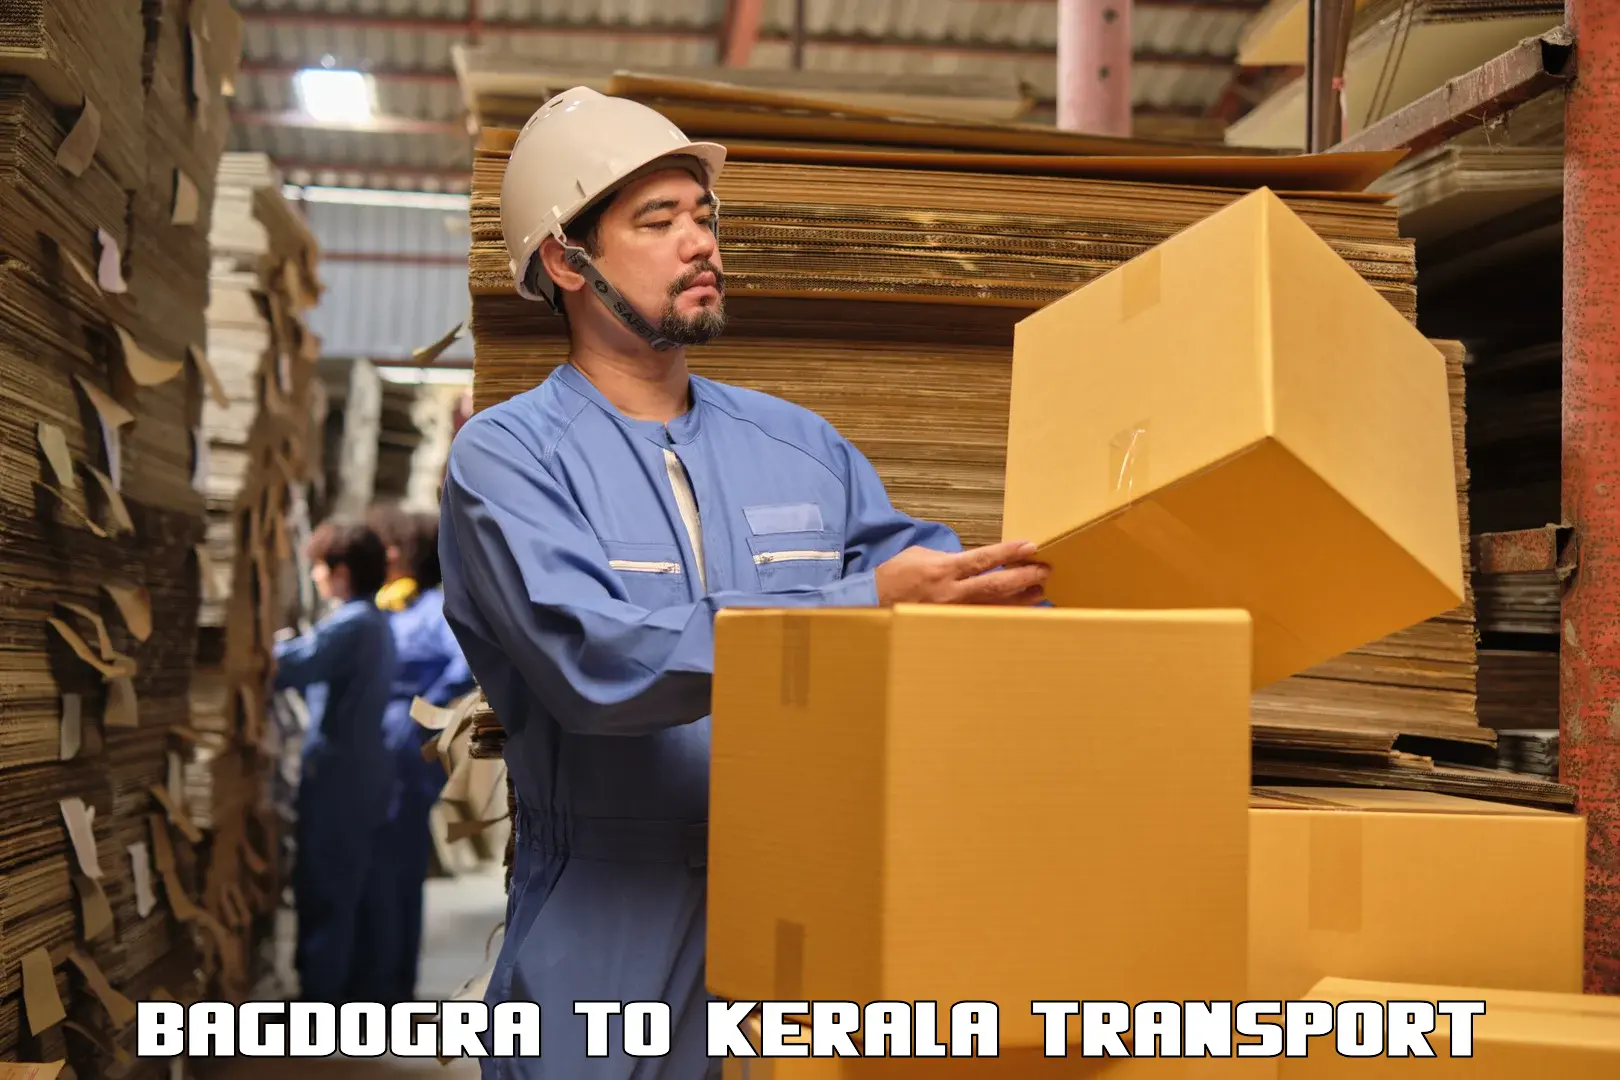 Shipping partner Bagdogra to Mahe